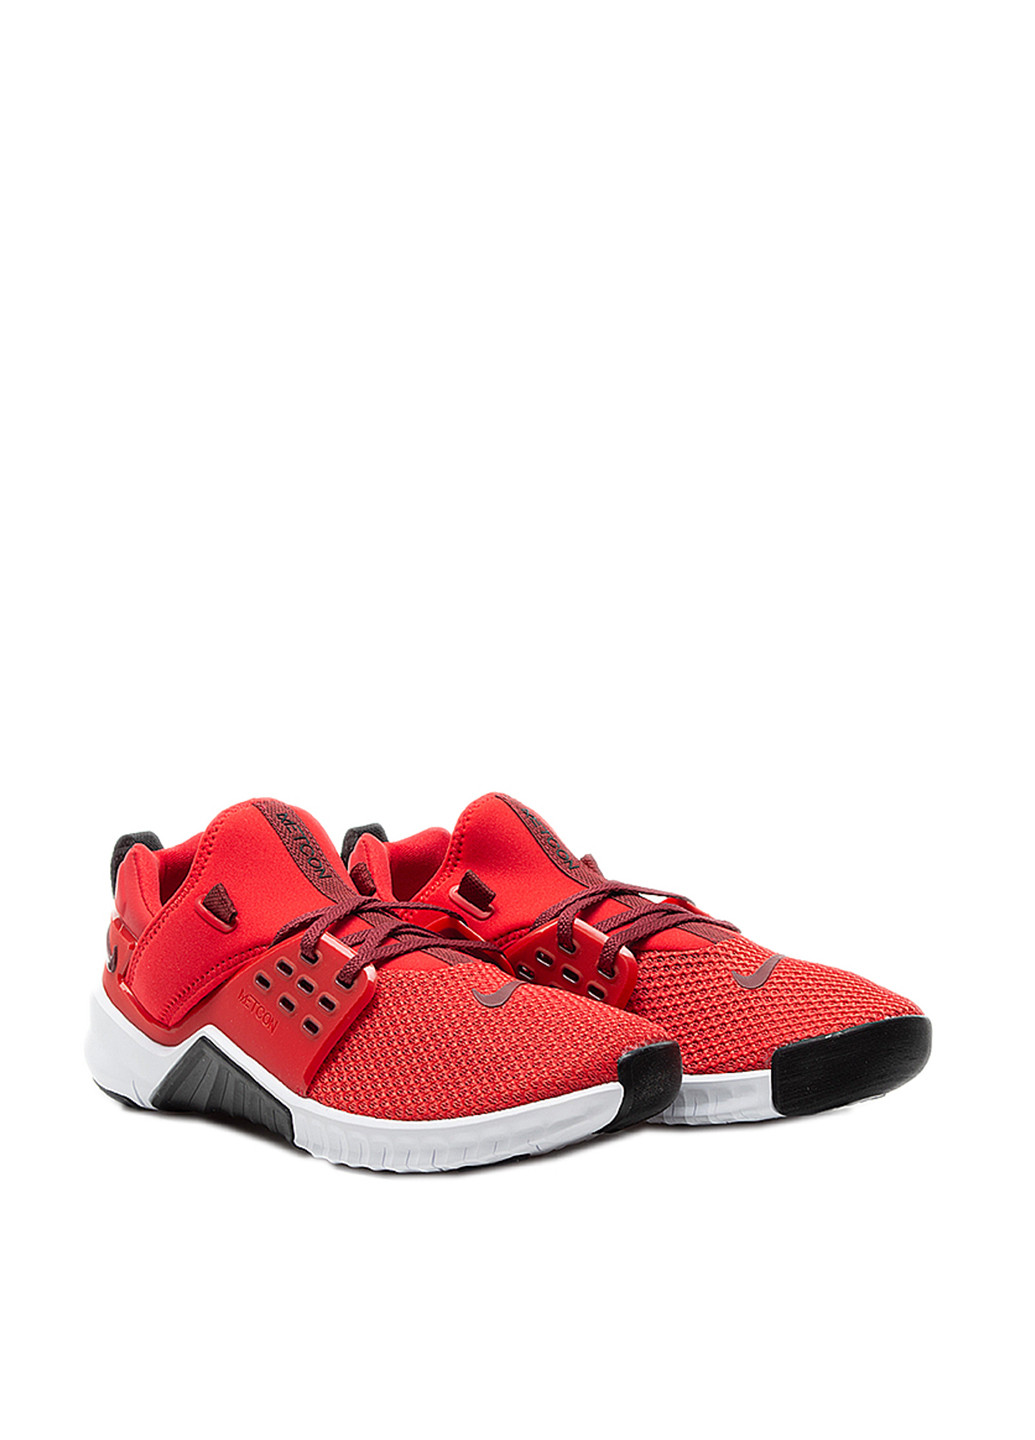 Червоні всесезон кросівки Nike Nike Free X Metcon 2